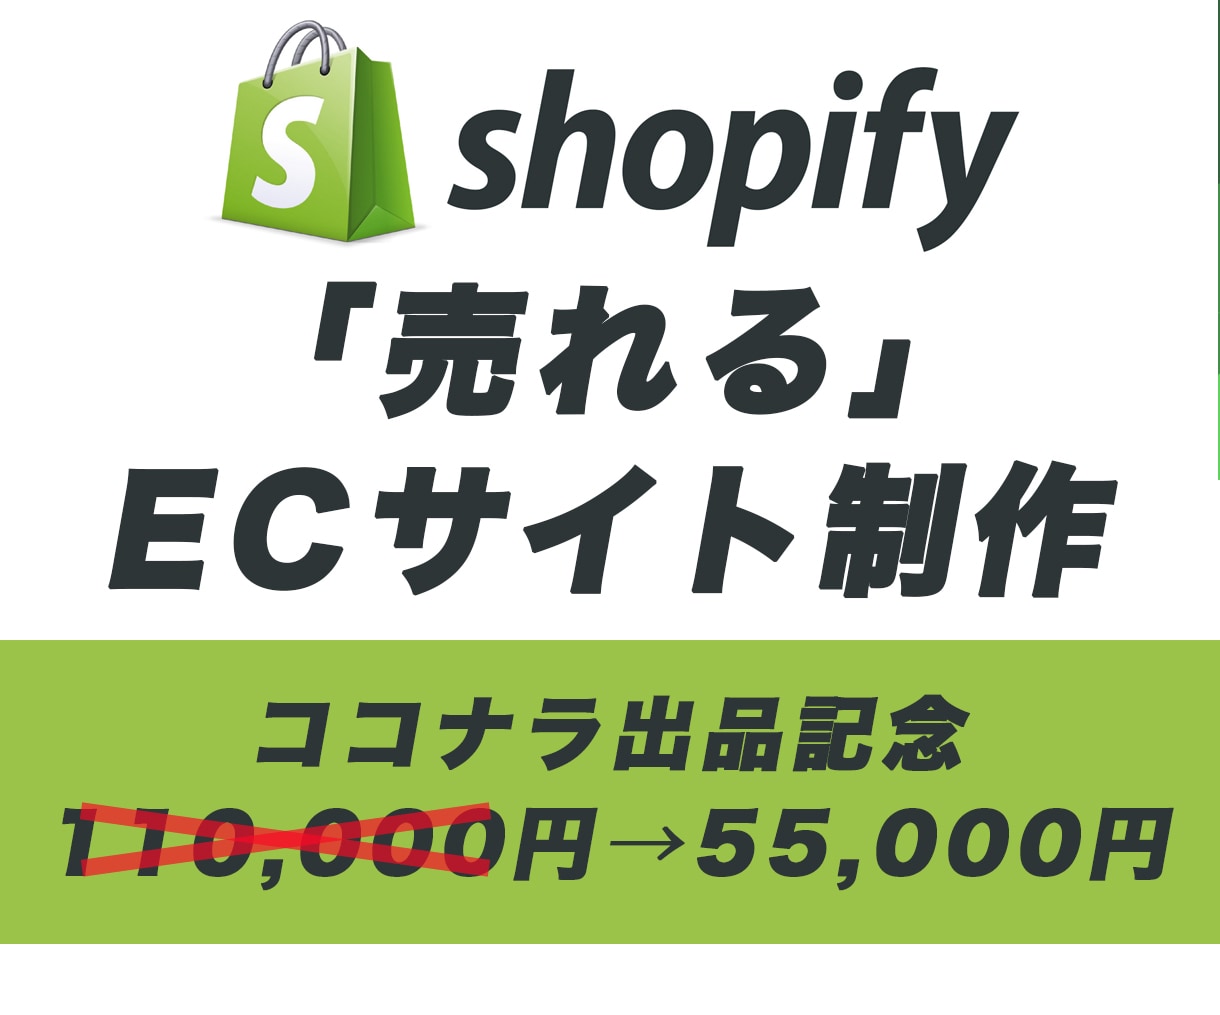 ShopifyのECサイトを制作します ただ作るだけでは意味がない！「売れる」ECサイトを制作します イメージ1